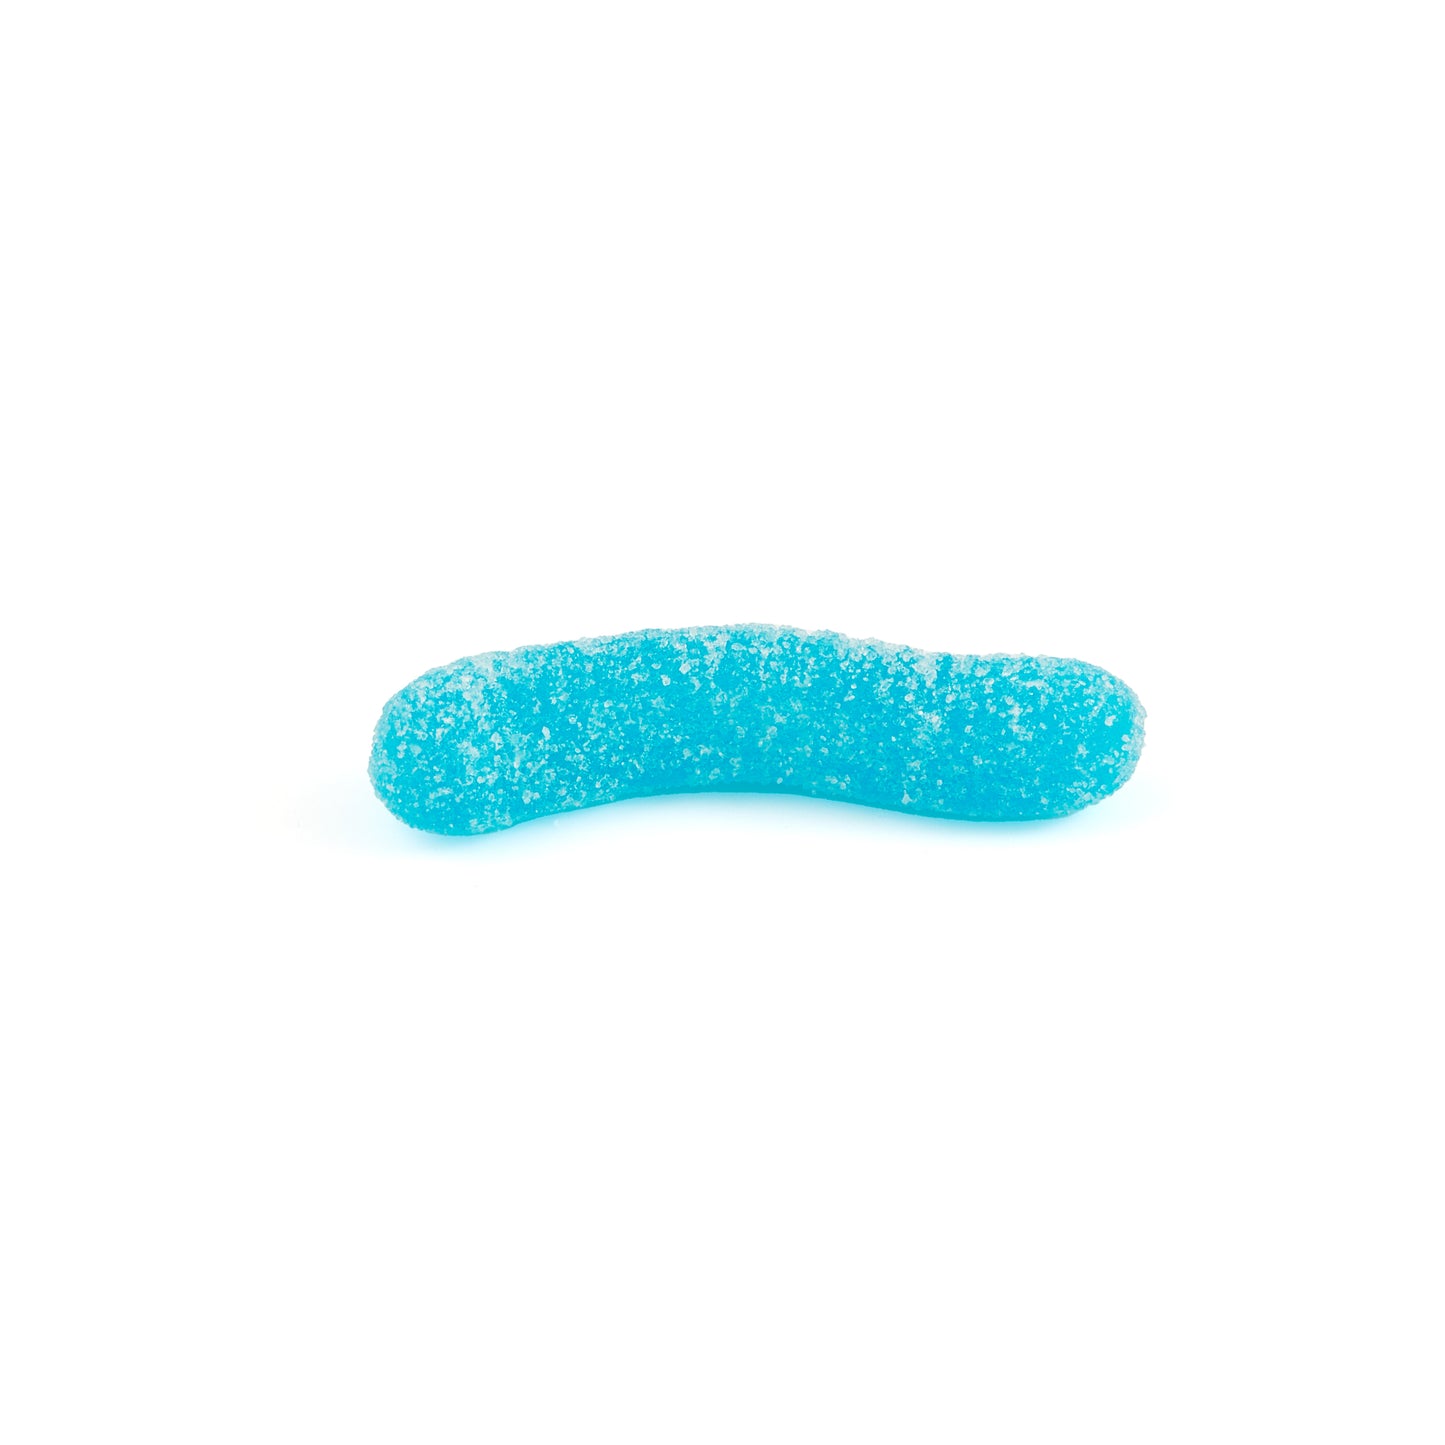 Super Sour Gummy Worms